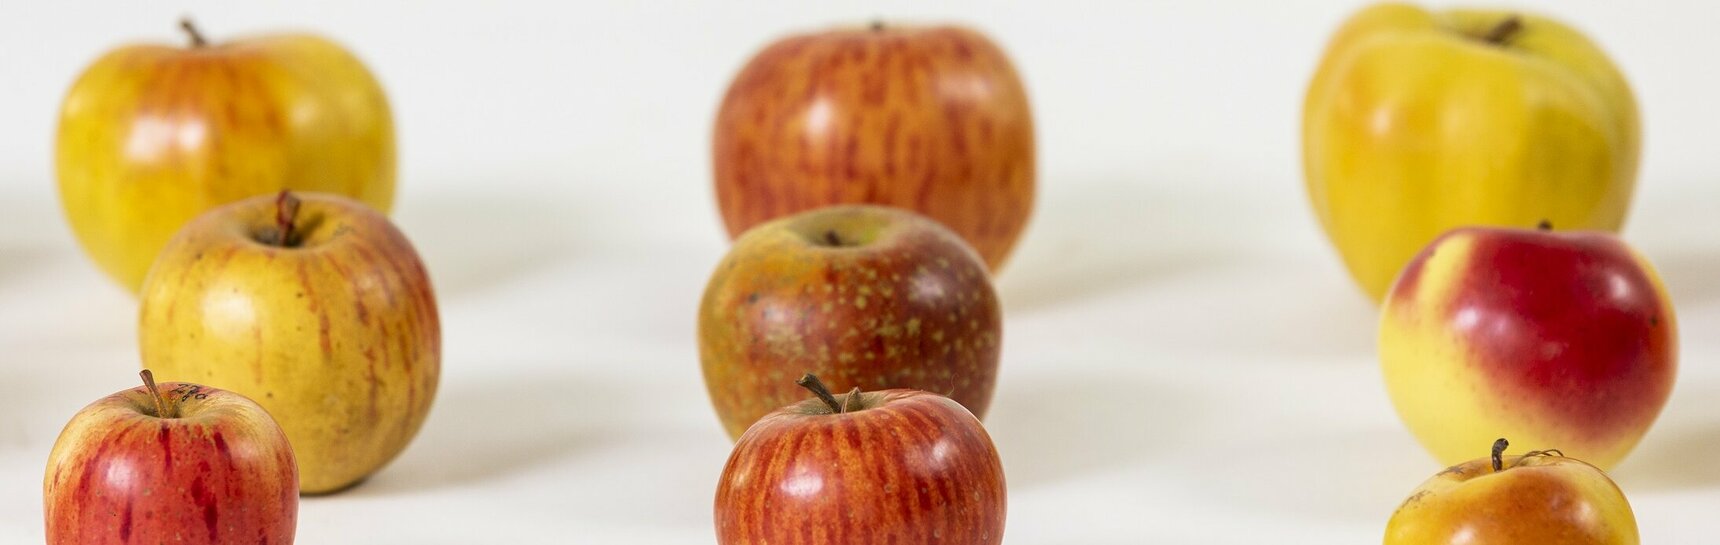 Modelle von diversen Apfelsorten aus Papiermaché mit gewachster Oberfläche aus den 1880er-Jahren